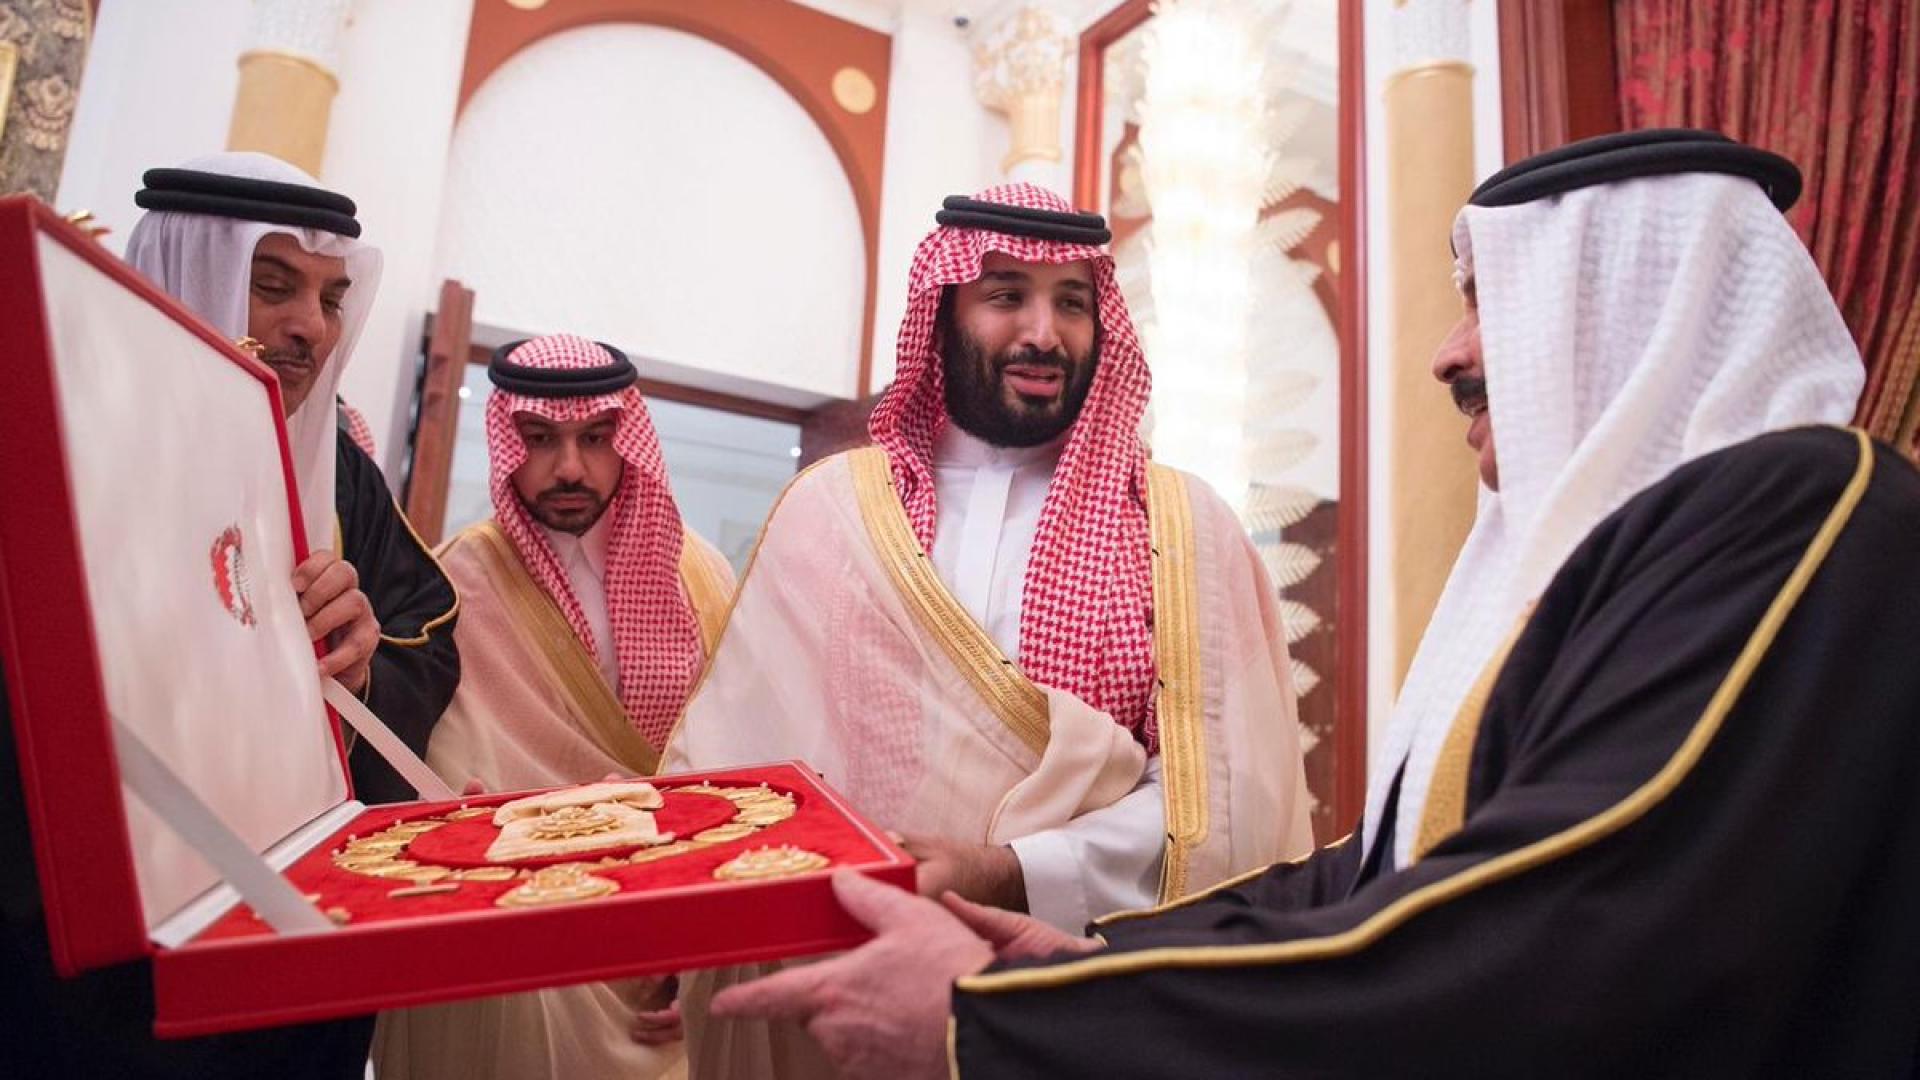 ماذا تعرف عن أعلى وسام في البحرين الذي حصل عليه ولي العهد؟